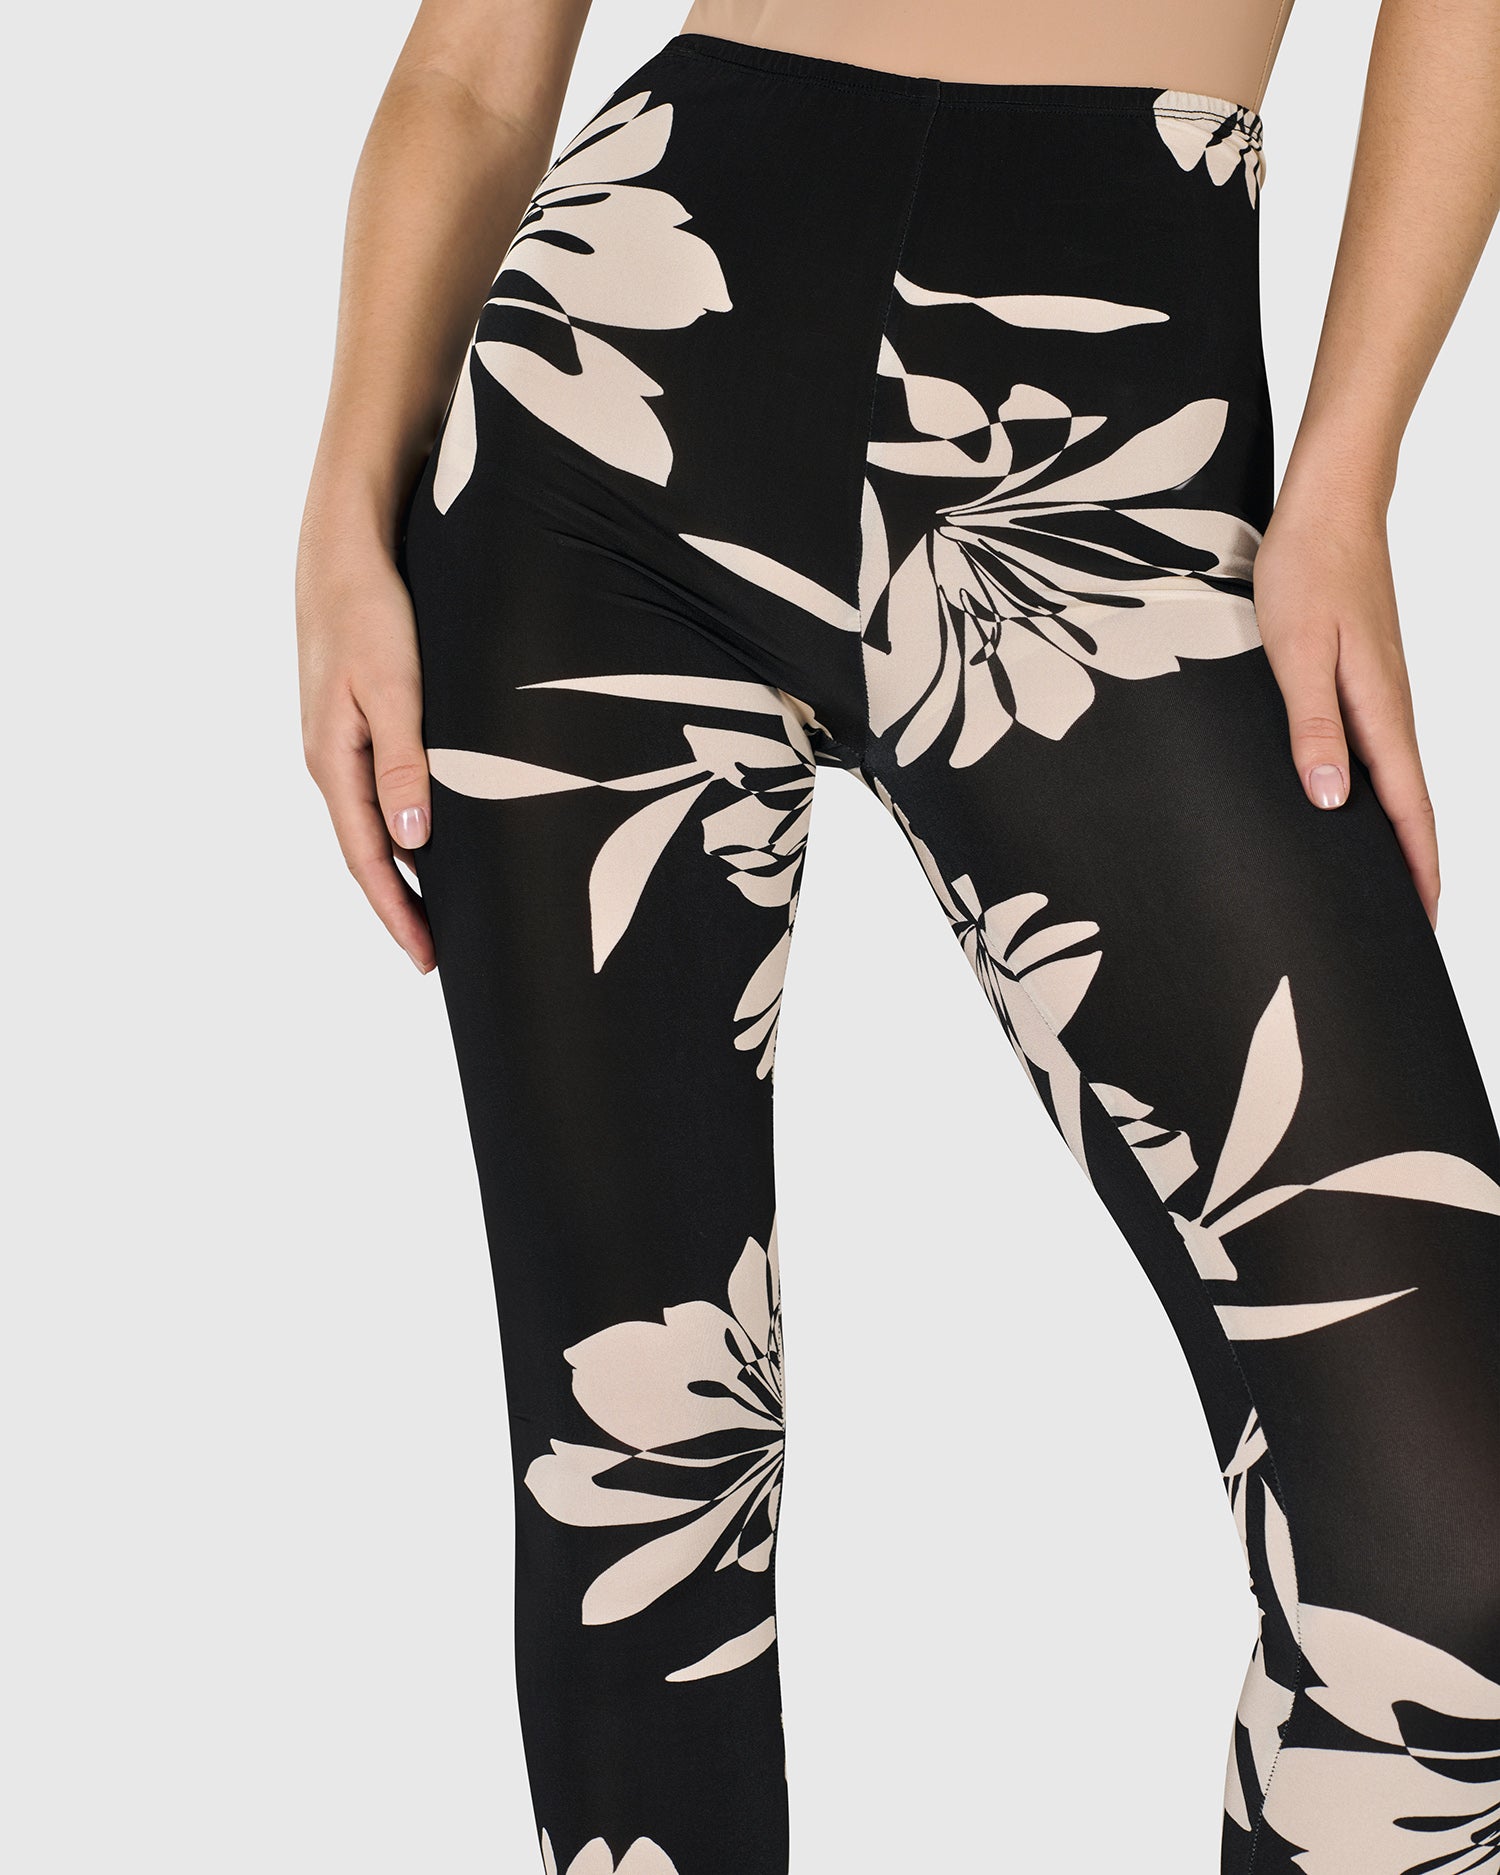 Women's Skinny Black White Floral Print Leggings Stretchy Jeggings | eBay